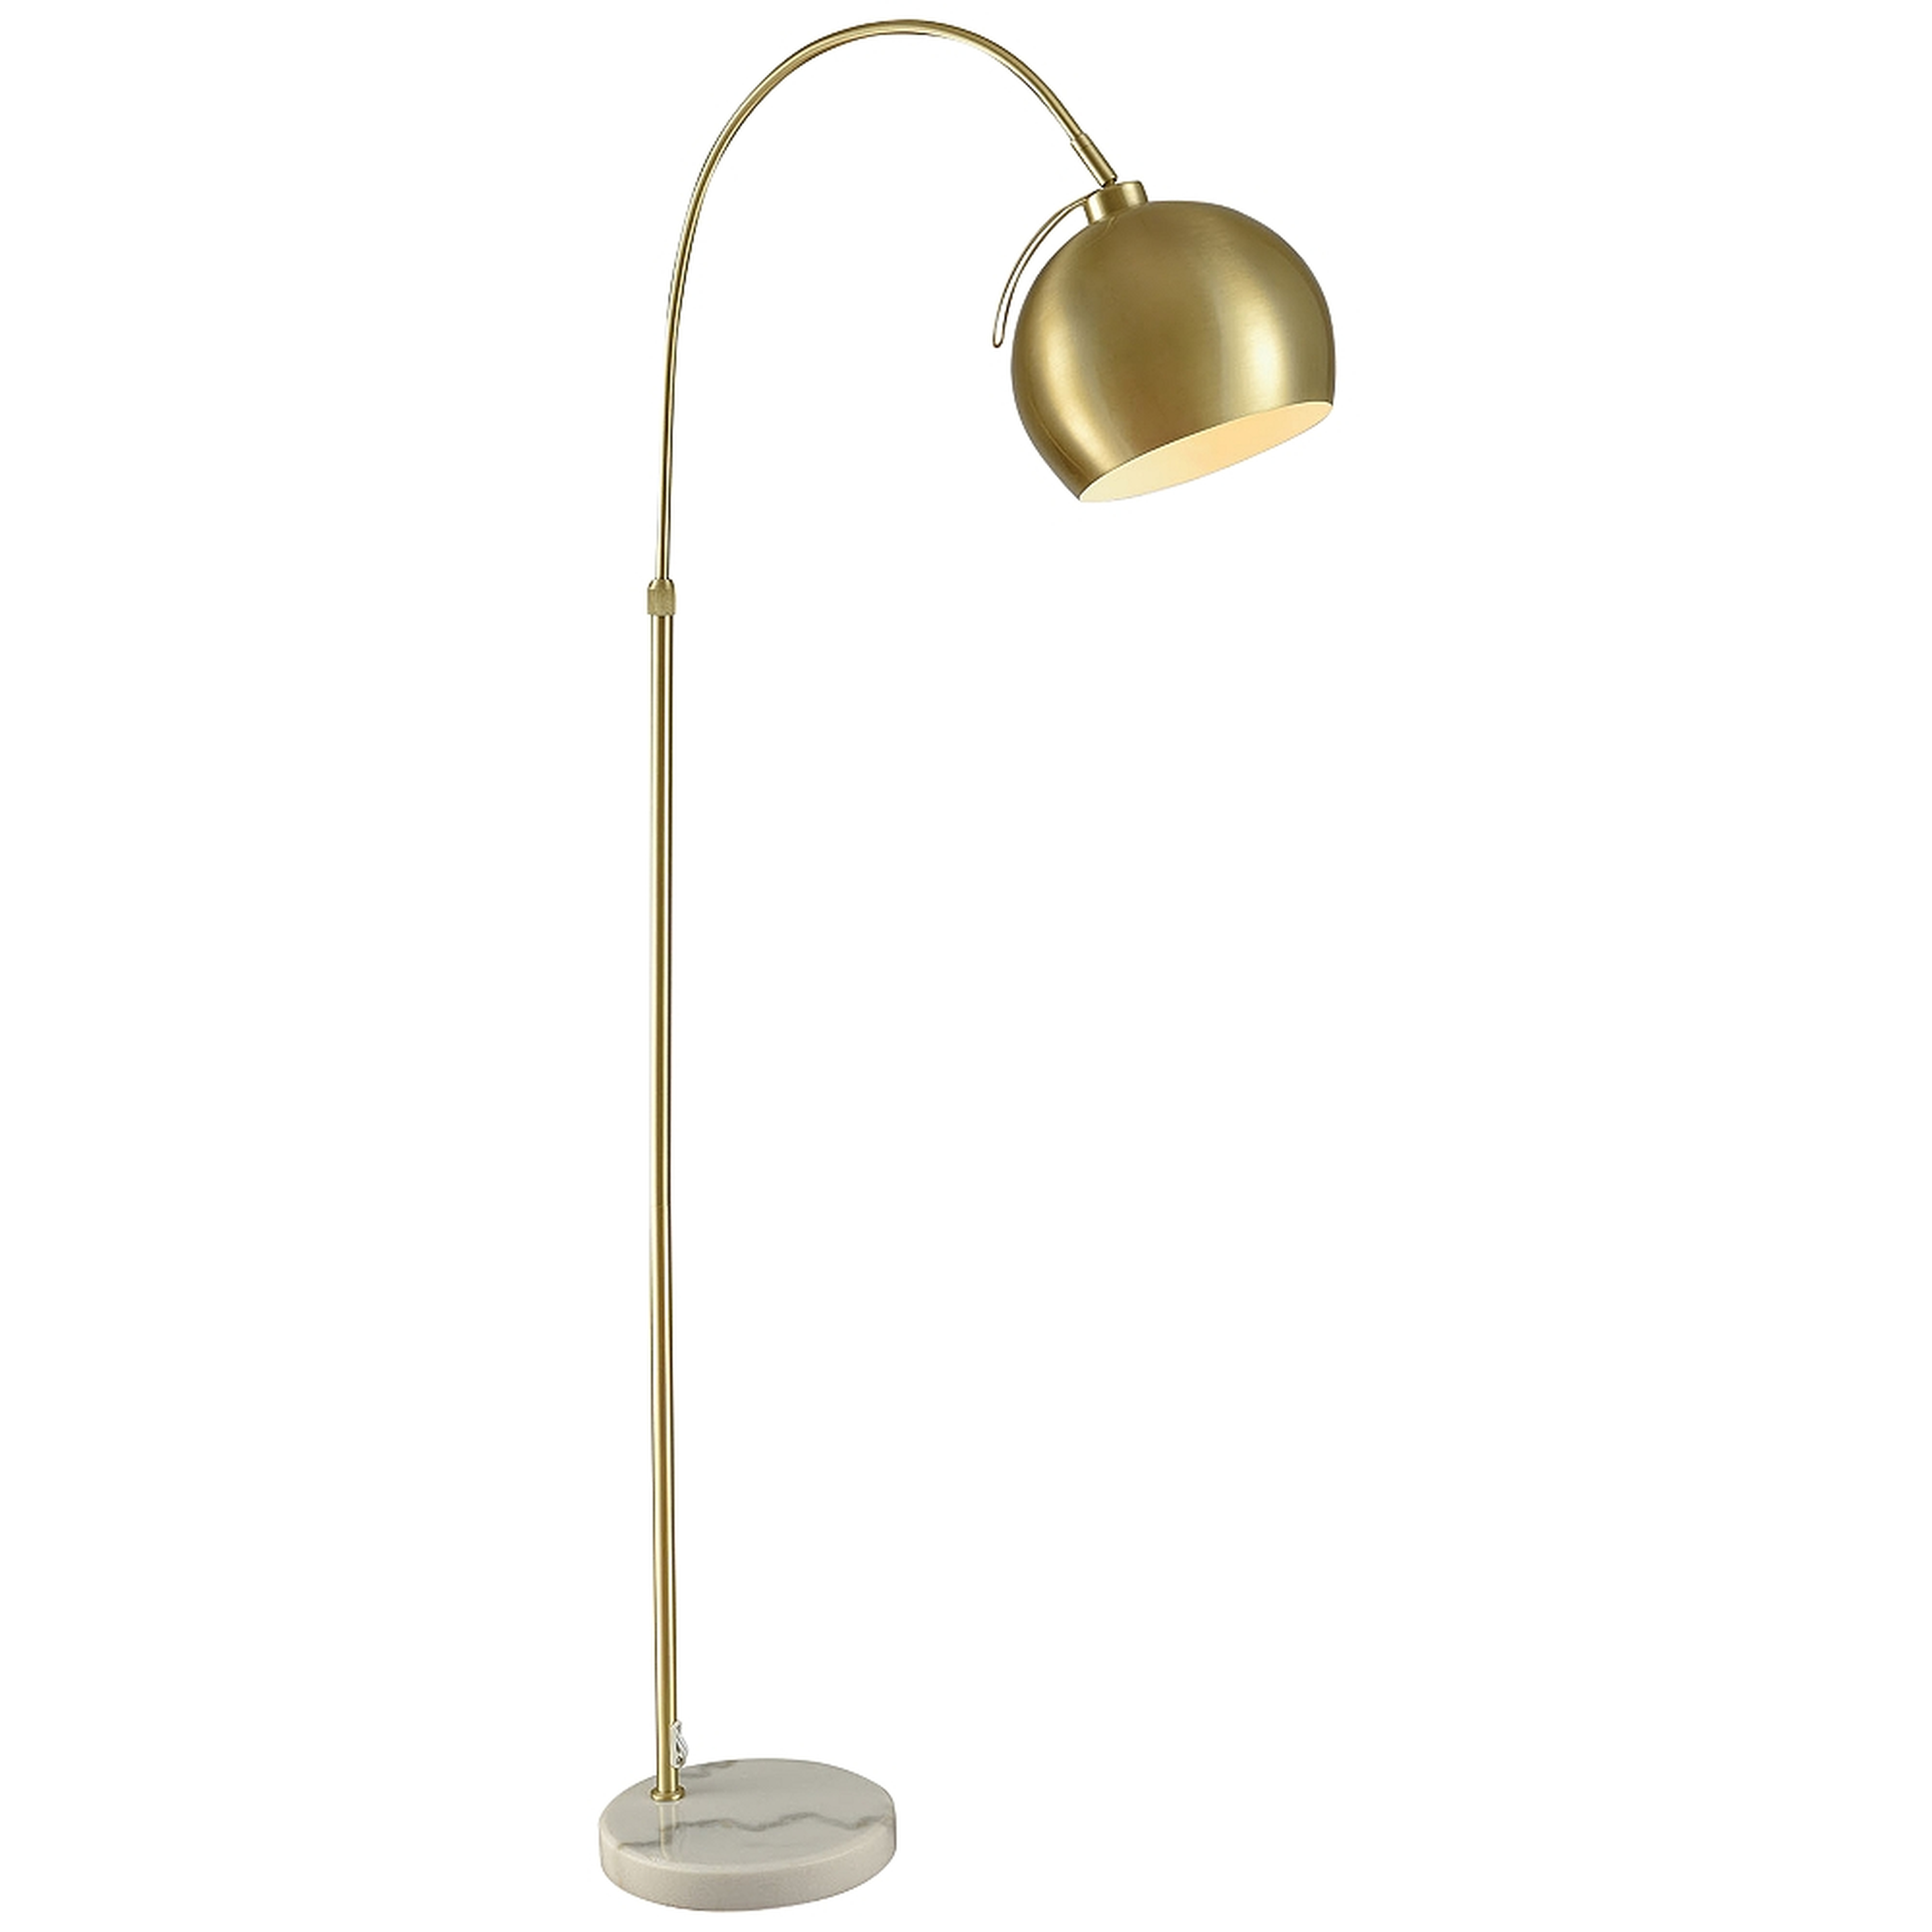 Dimond Koperknikus Gold Metal Arc Floor Lamp - Lamps Plus